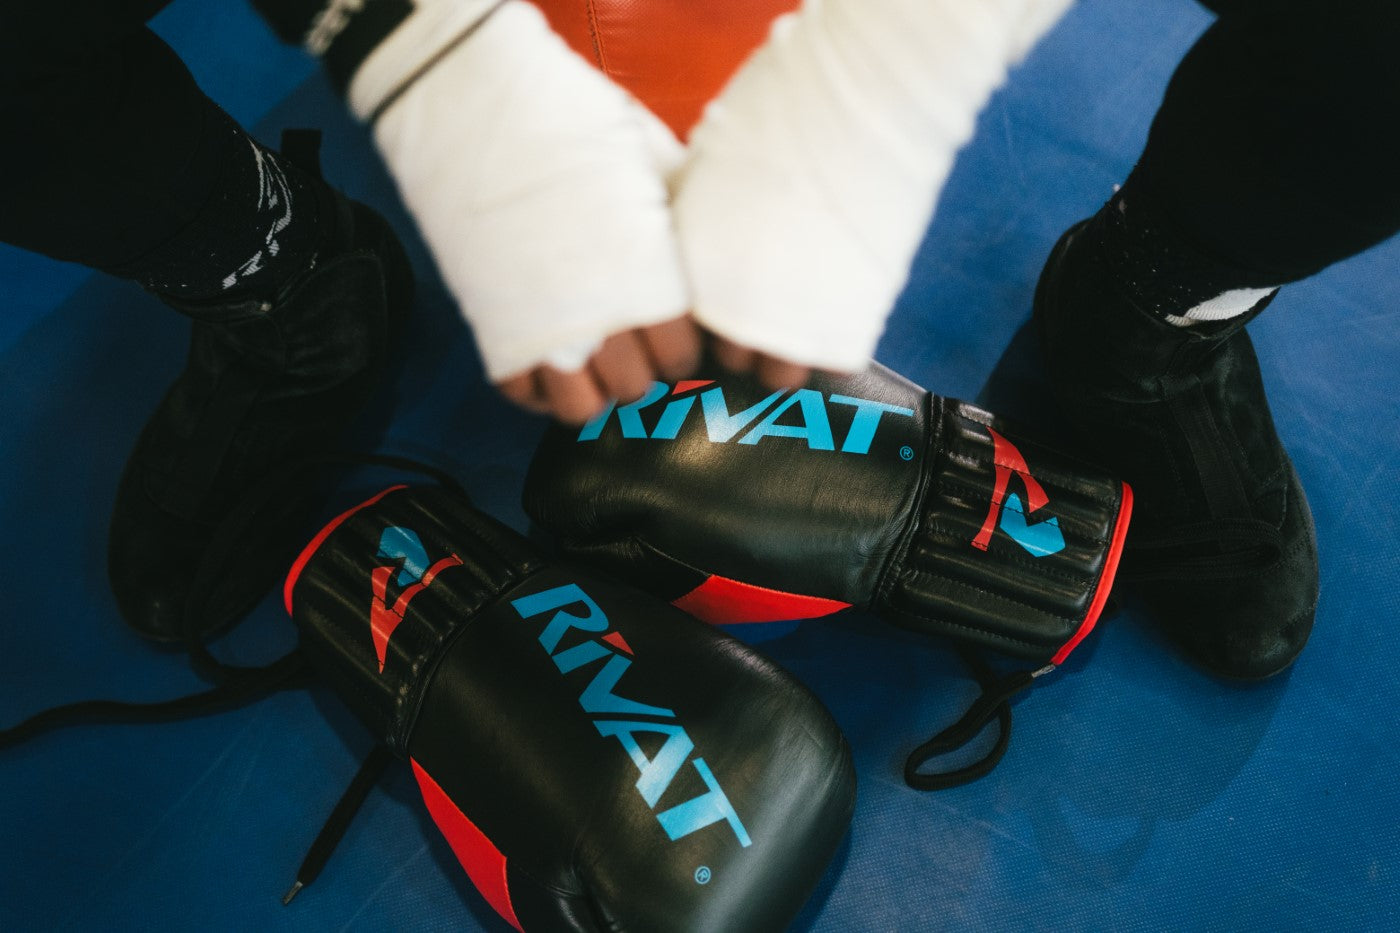 Équipement de savate boxe française, gants de boxe, chaussures de boxe